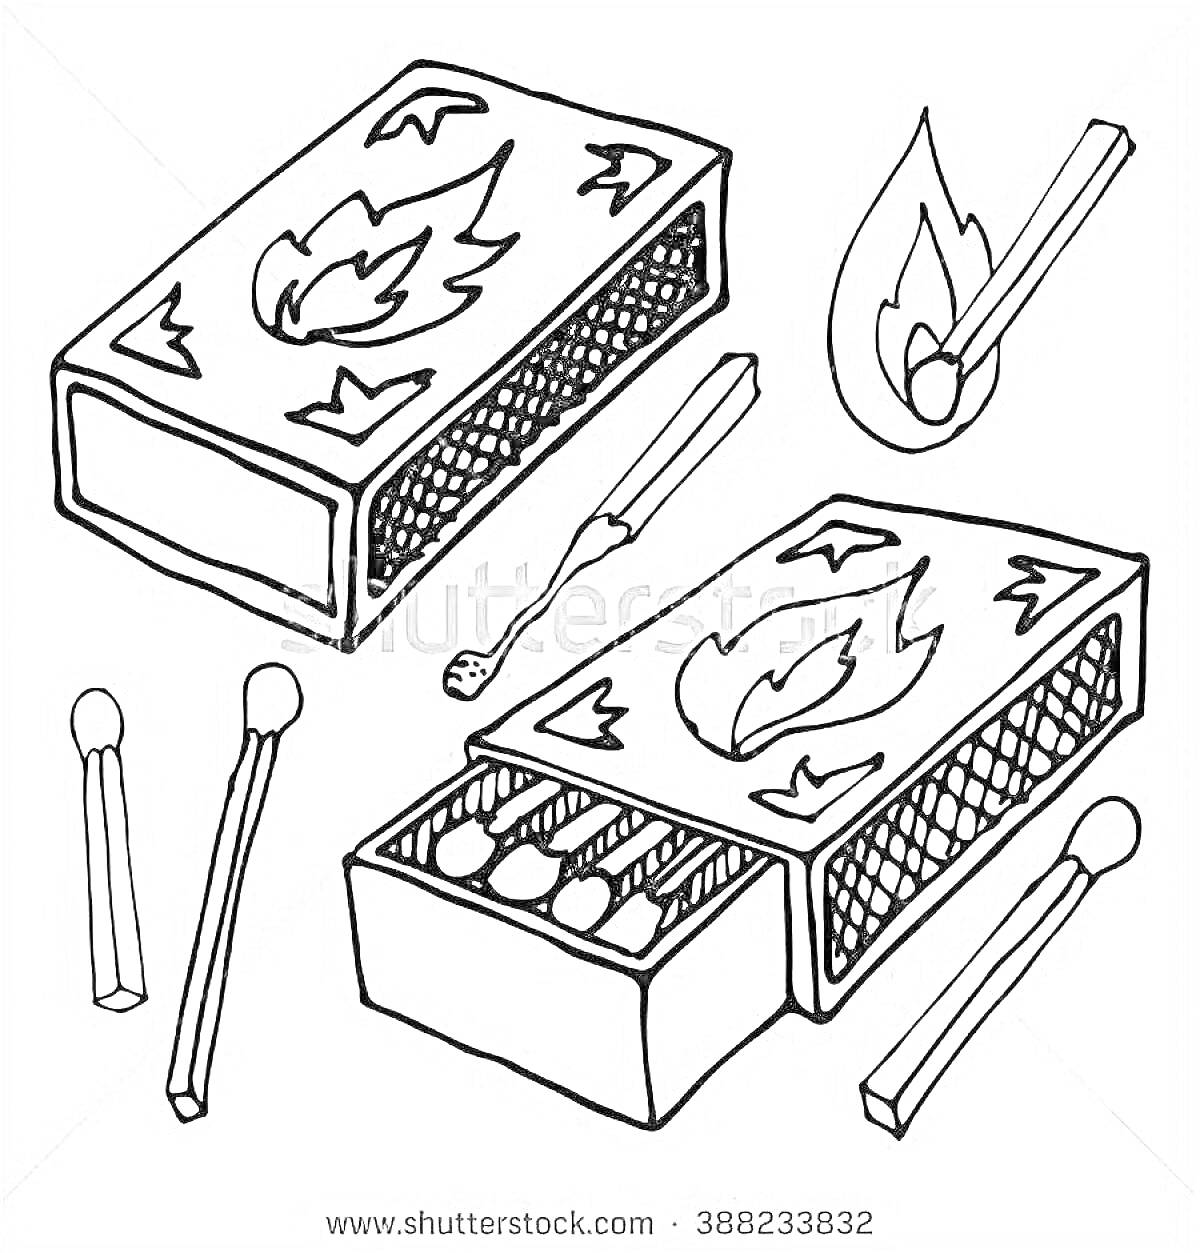 Две спичечные коробки с изображением огня, одна открытая с видимыми спичками внутри, одна щепка и три отдельные спички, одна из которых горит